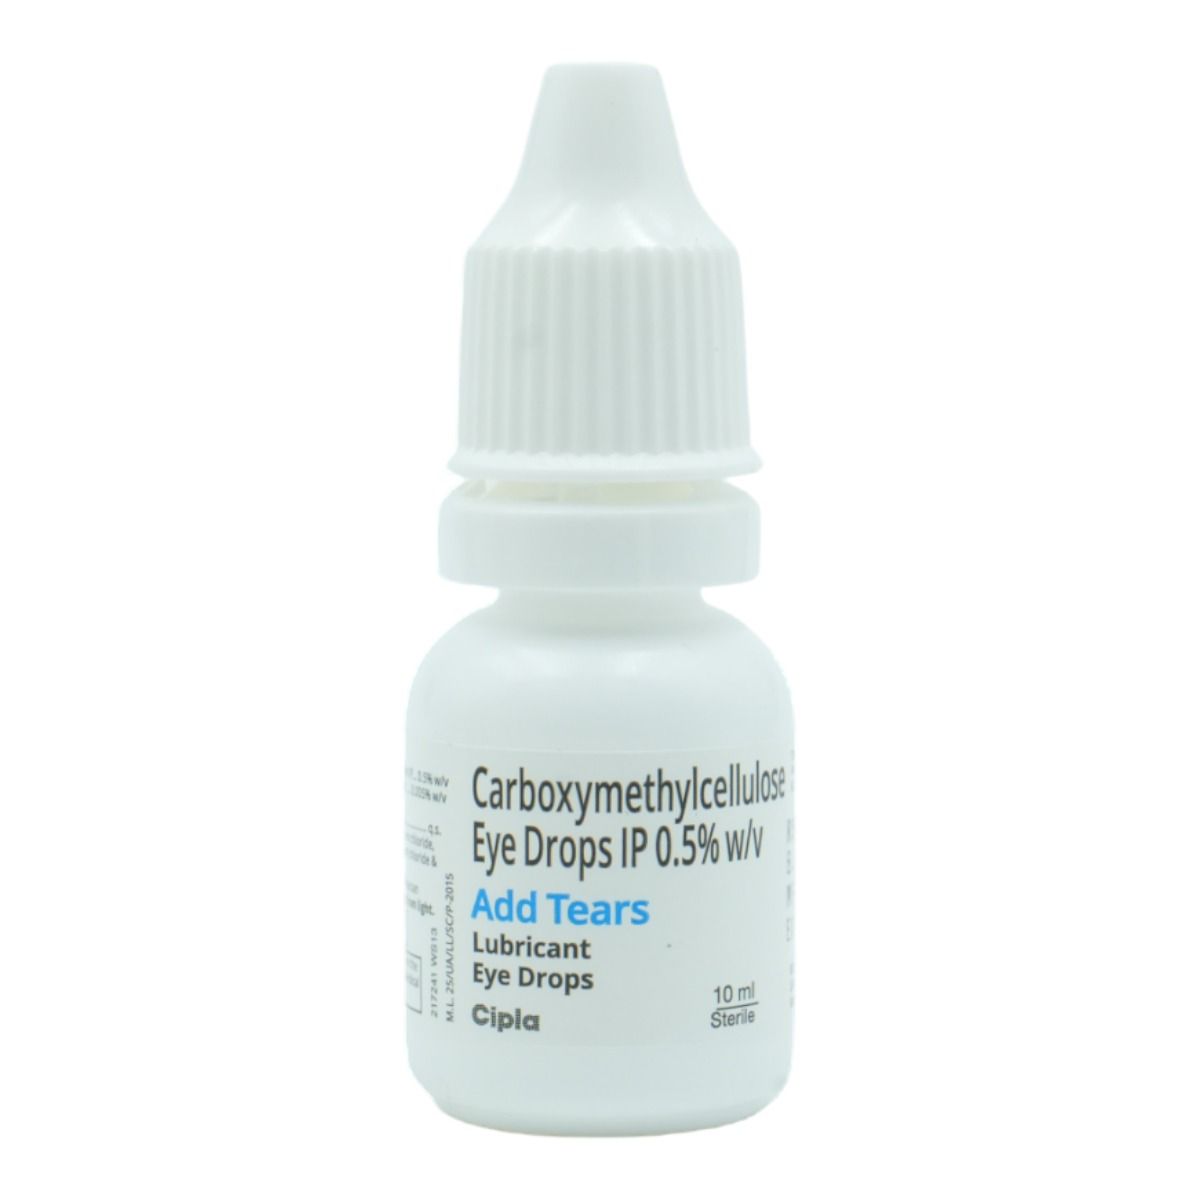 Buy Add Tears Eye Drops 10 ml Online